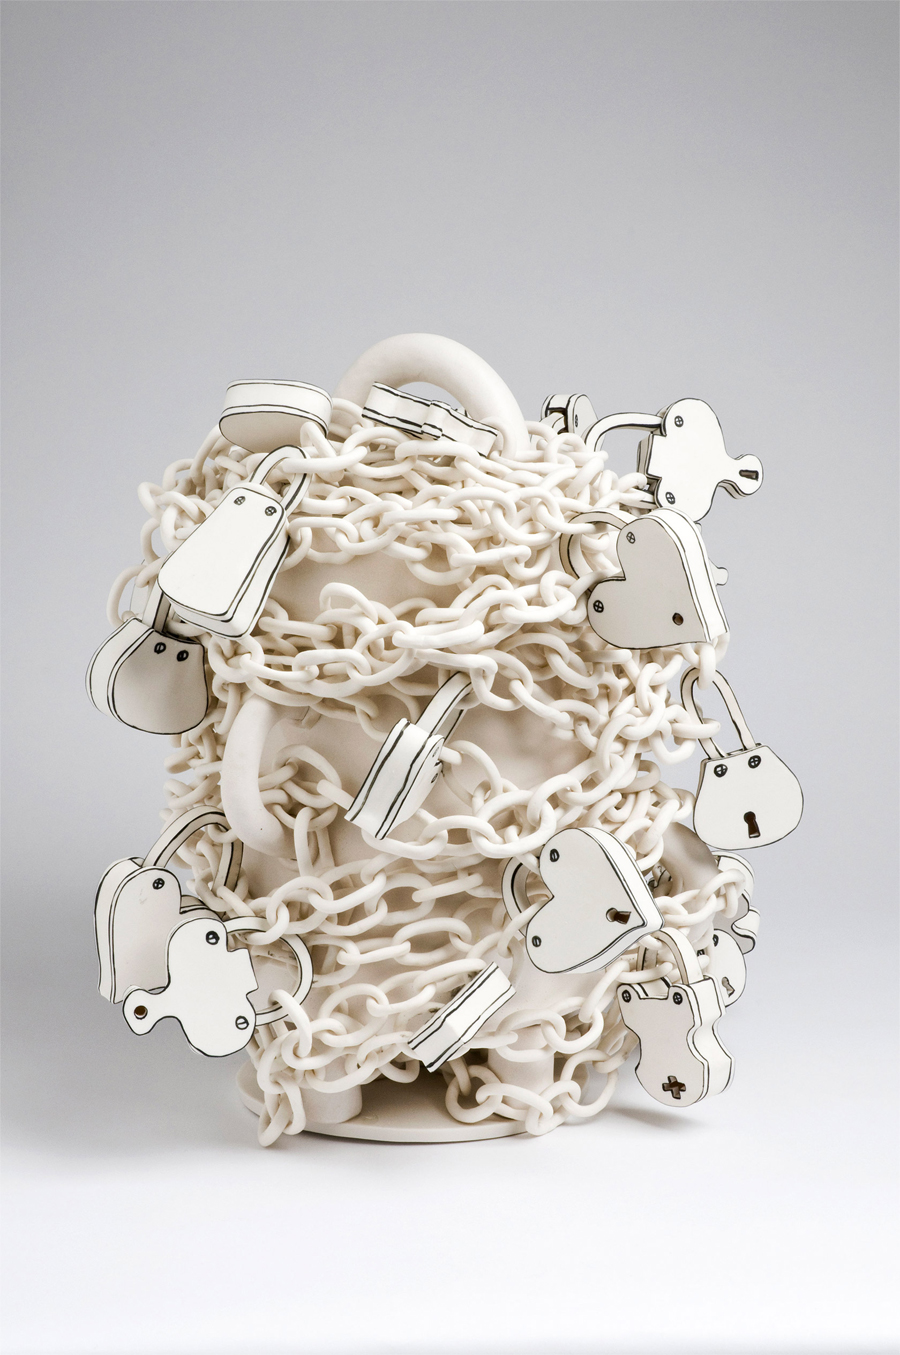 3D Porcelain Sculptures by Katharine Morling